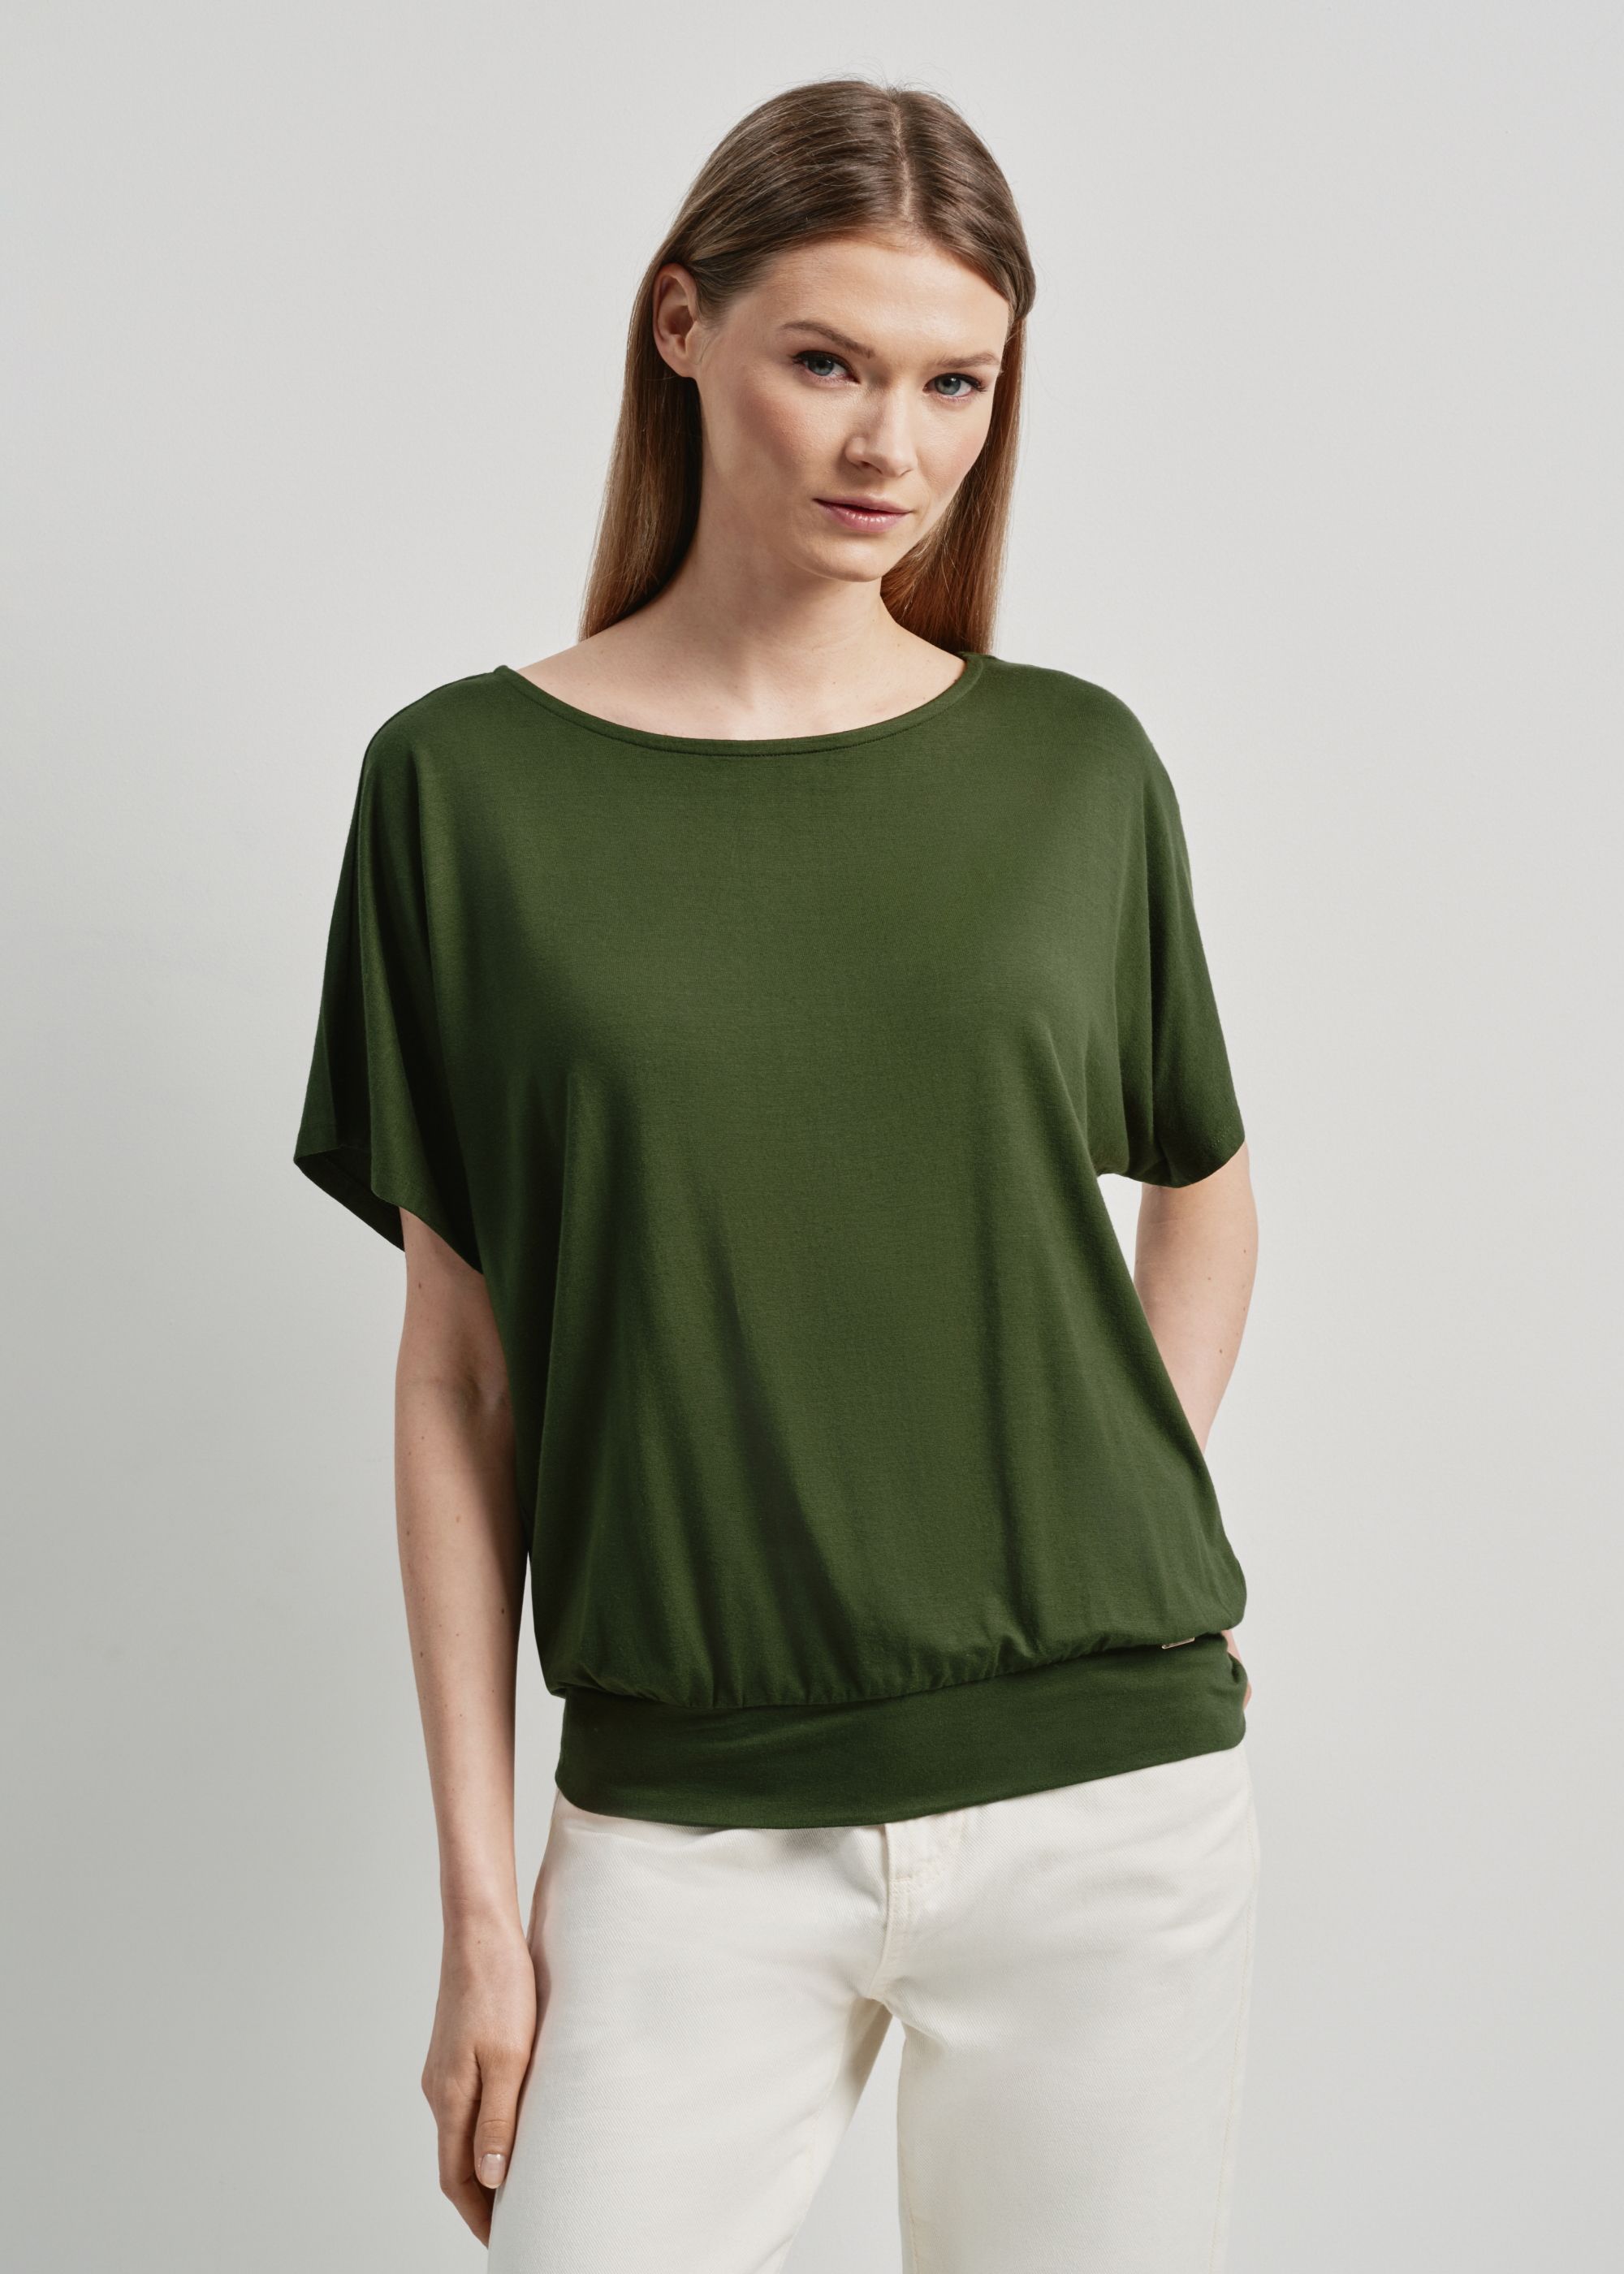 Жіноча блузка зеленого кольору